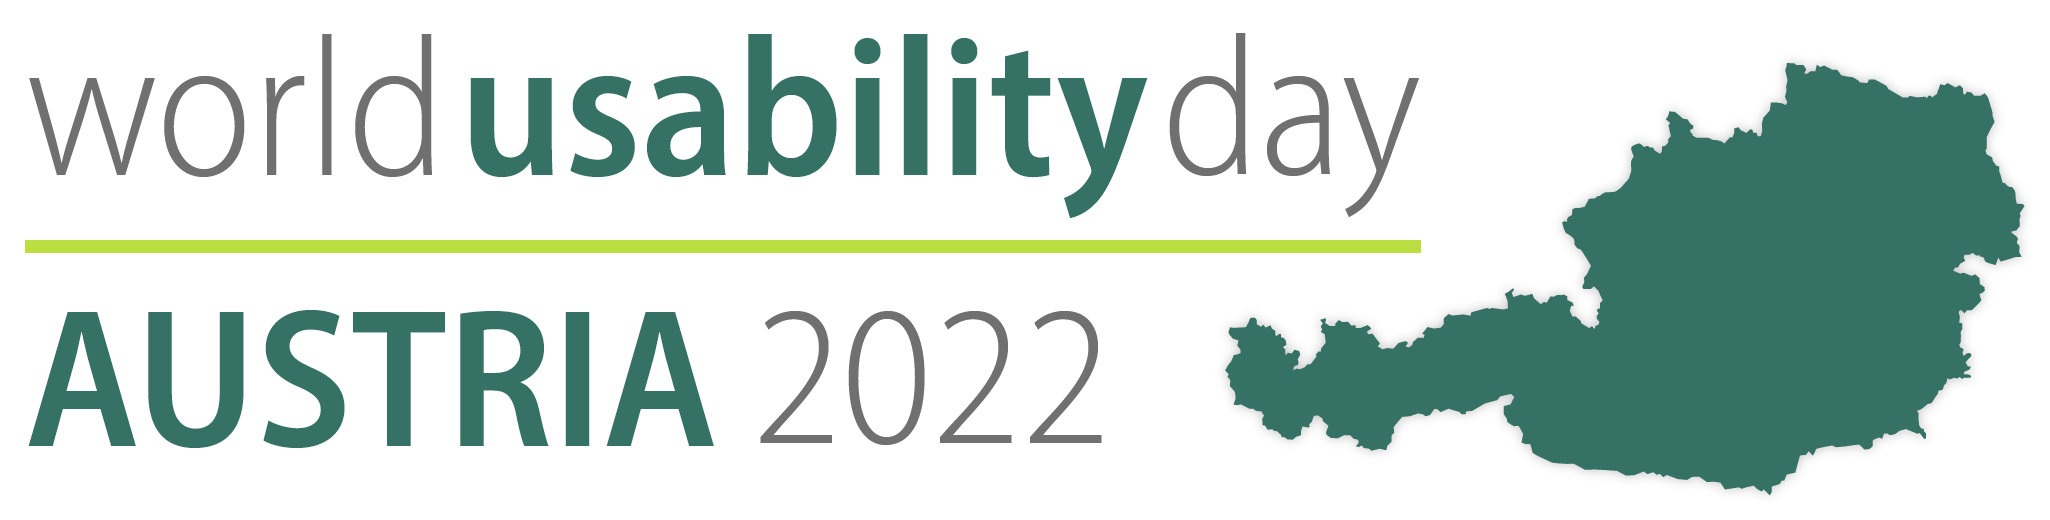 World Usability Day Austria 2022 Logo